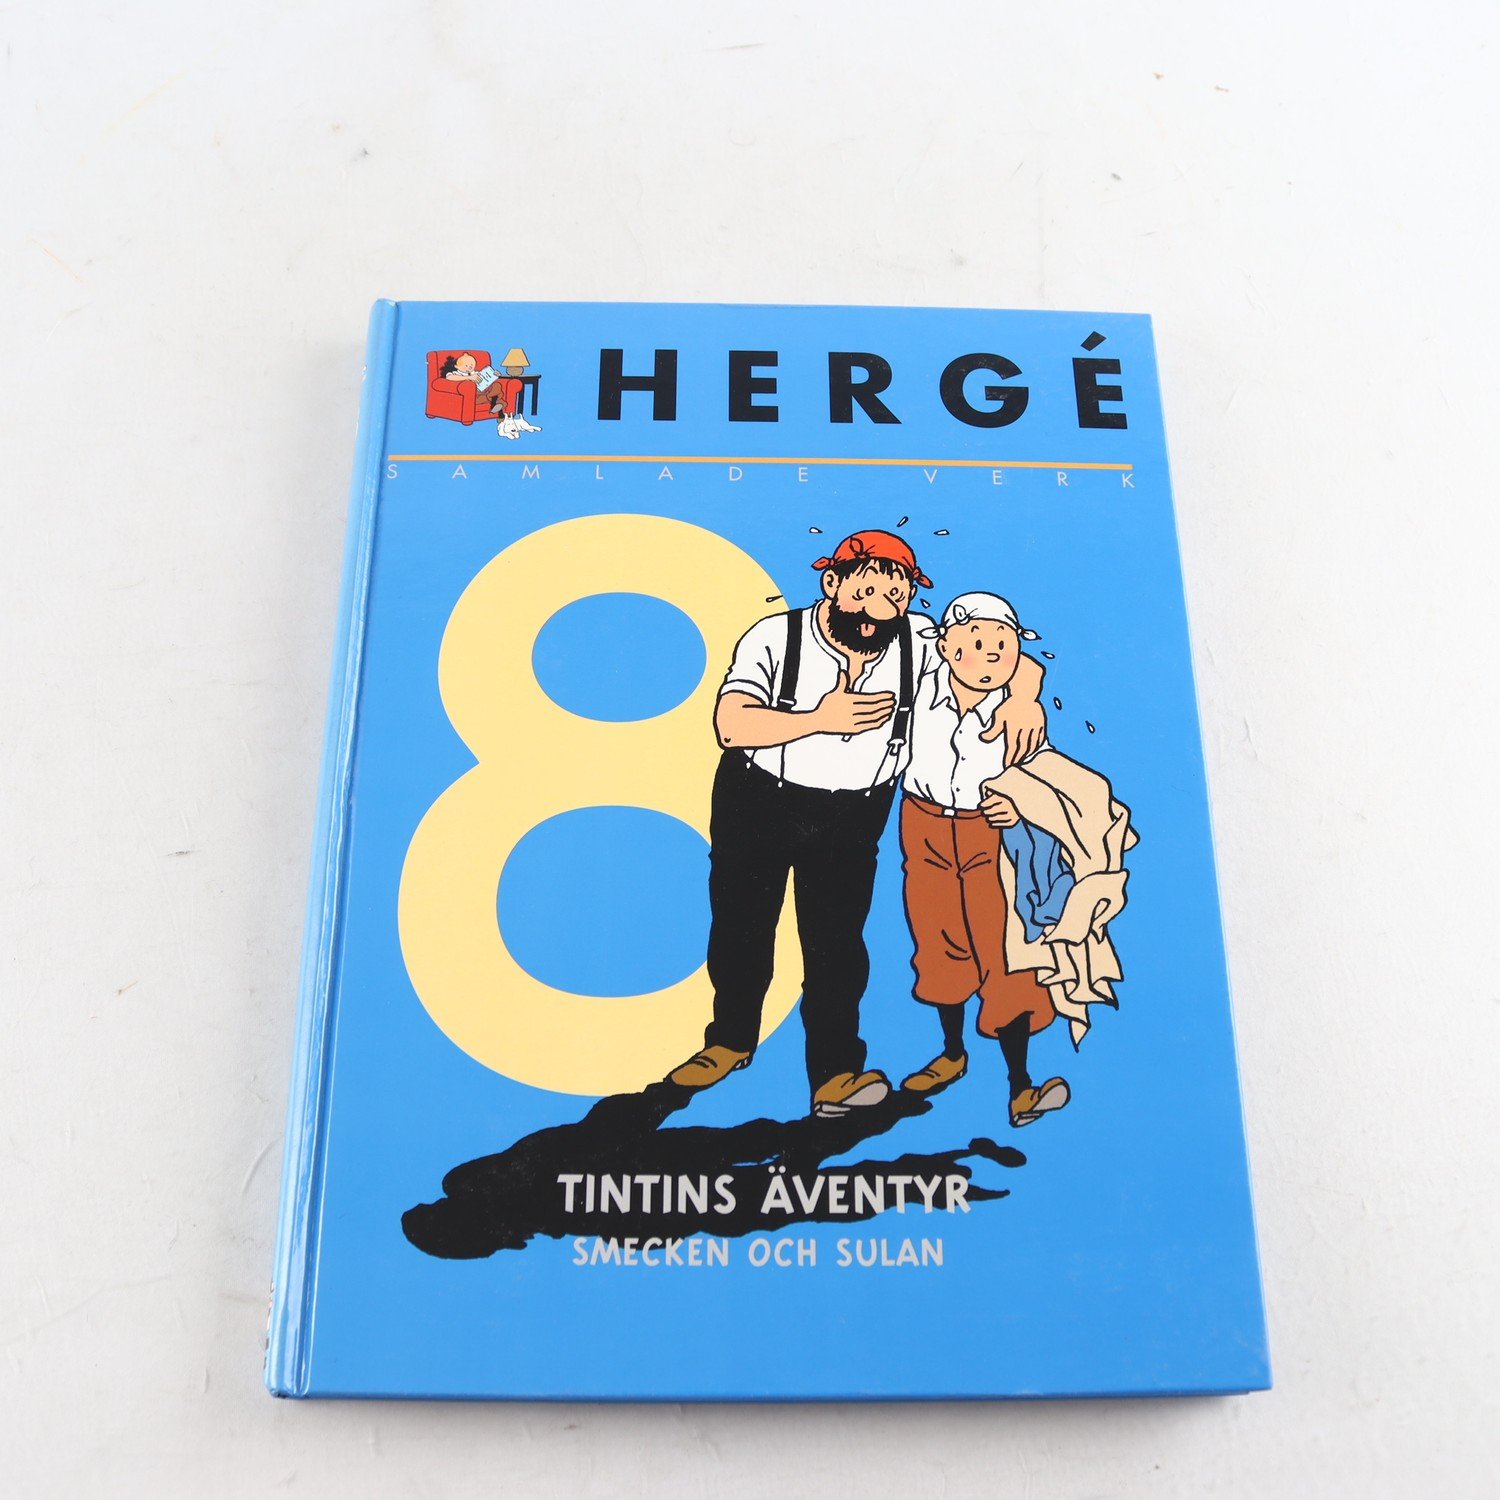 Hergé, Samlade verk, Vol. 8, Tintins äventyr, Smecken och Sulan